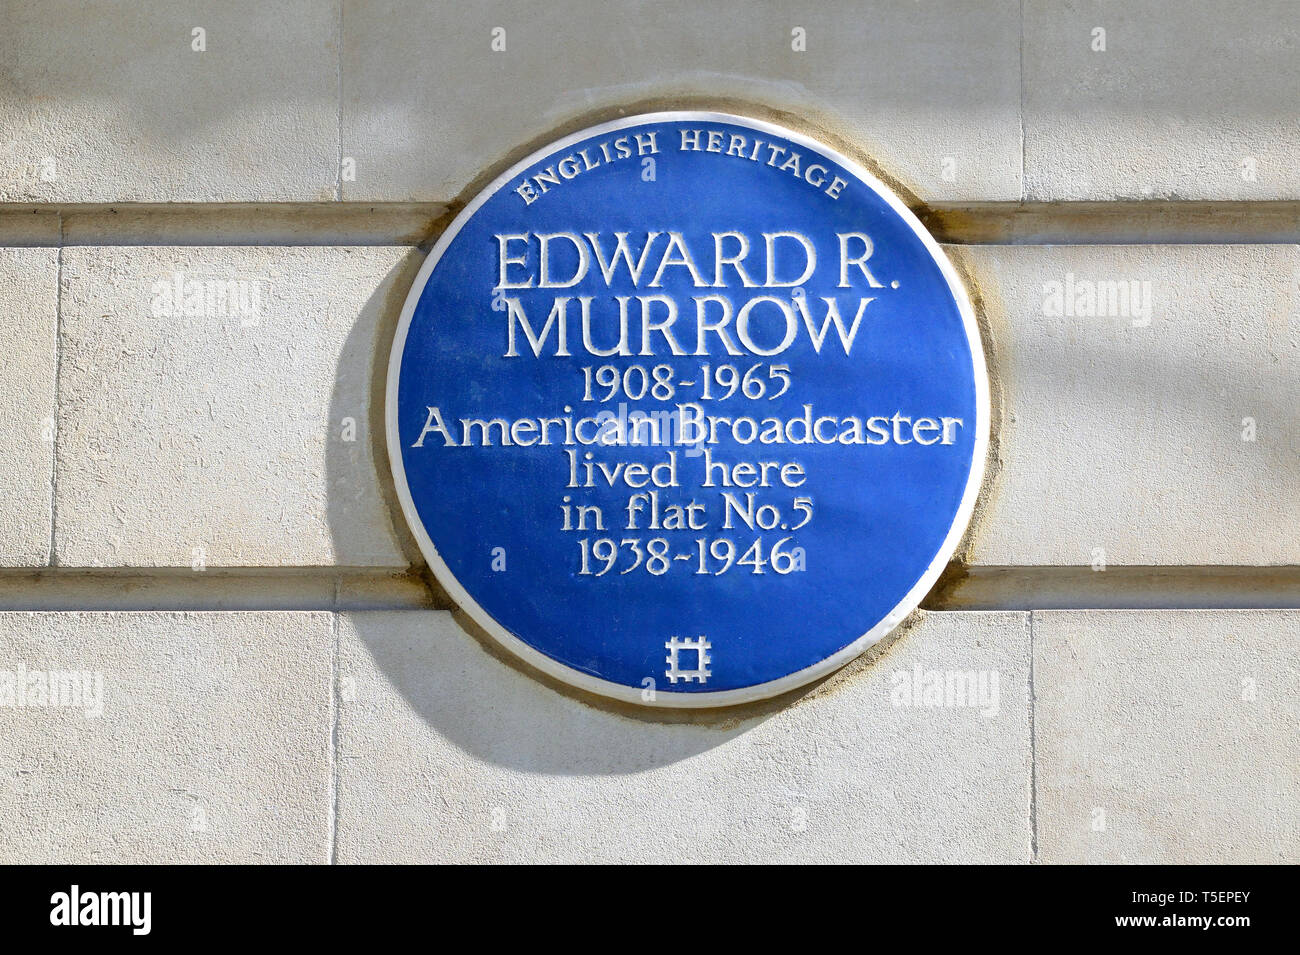 Londres, Inglaterra, Reino Unido. Placa Azul conmemorativa: Edward R. Murrow (1908-1965) emisora americana, vivió aquí en el piso nº5 (1938-1946) 84 Hallam Stree Foto de stock